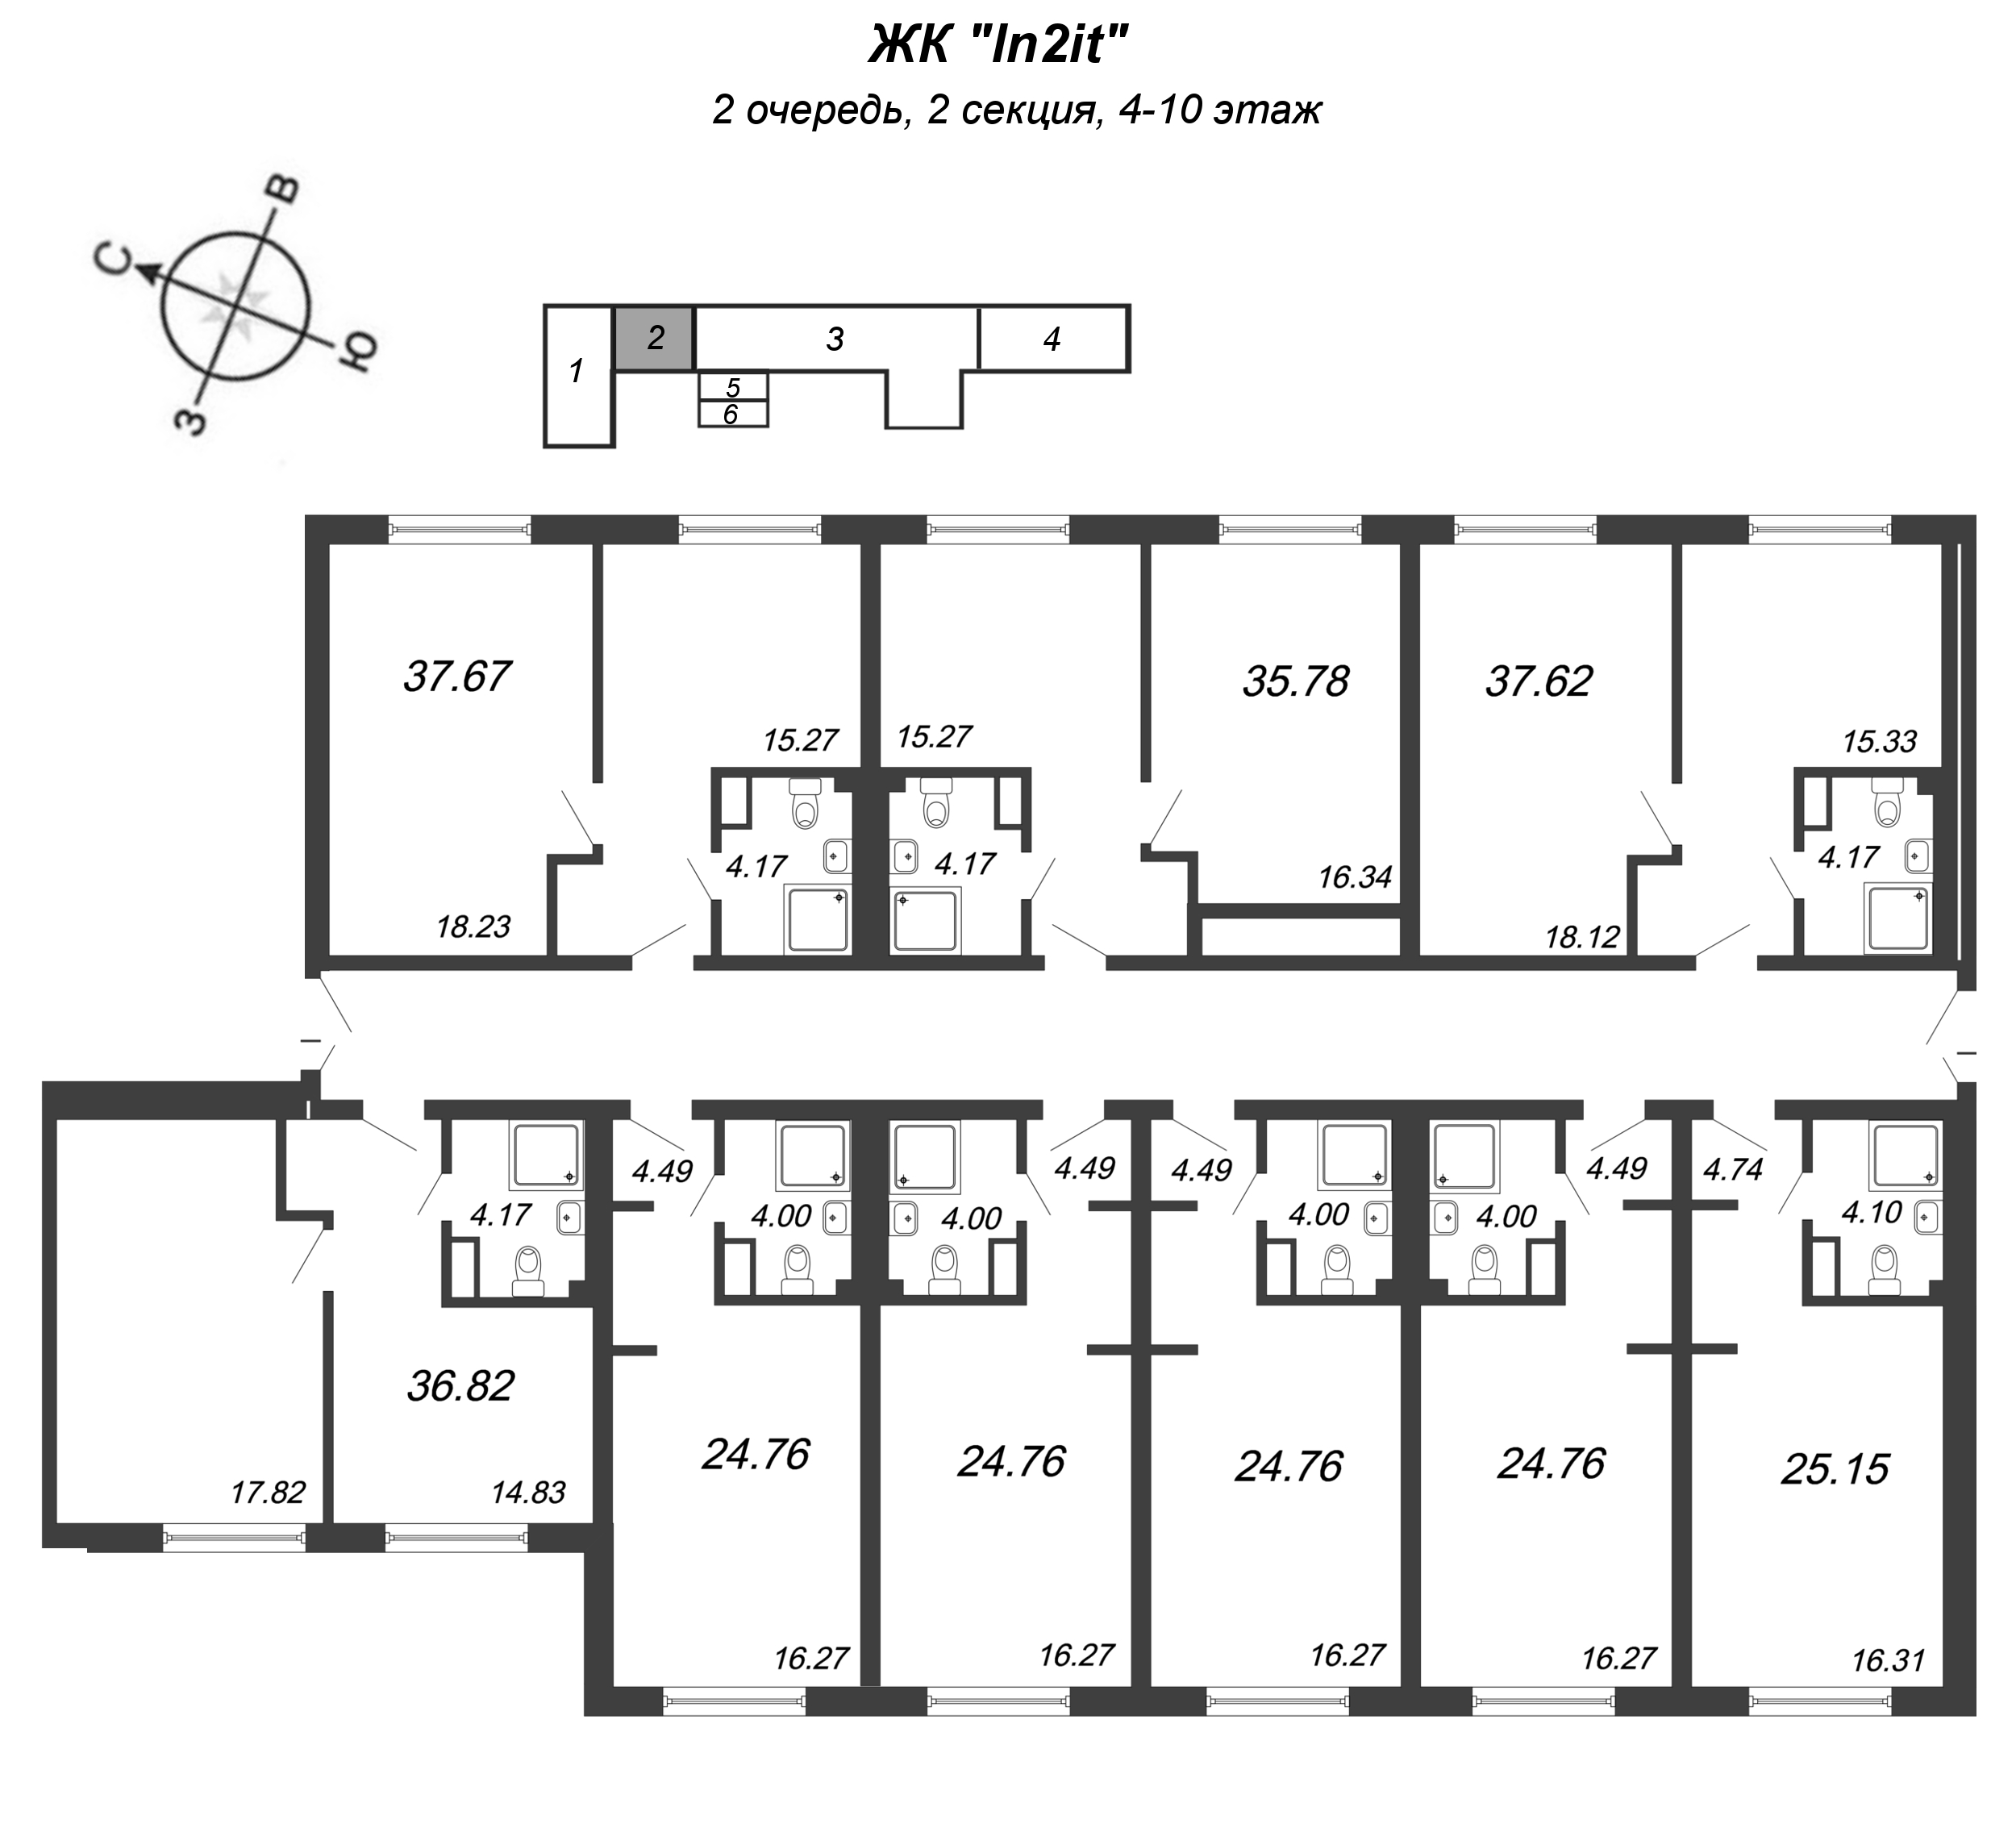 Квартира-студия, 24.76 м² в ЖК "In2it" - планировка этажа